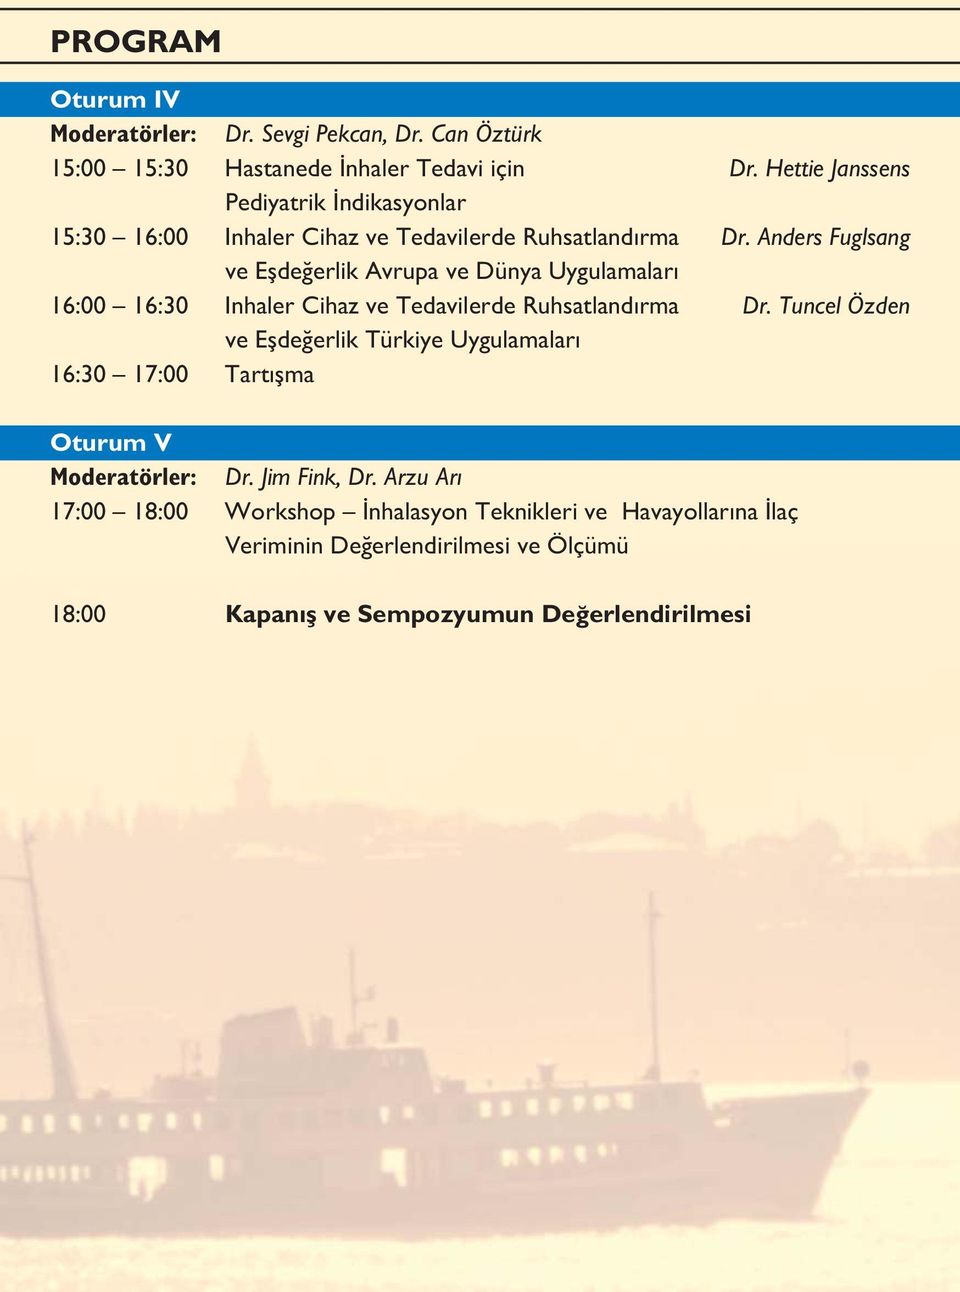 Anders Fuglsang ve Eşdeğerlik Avrupa ve Dünya Uygulamaları 16:00 16:30 Inhaler Cihaz ve Tedavilerde Ruhsatlandırma Dr.